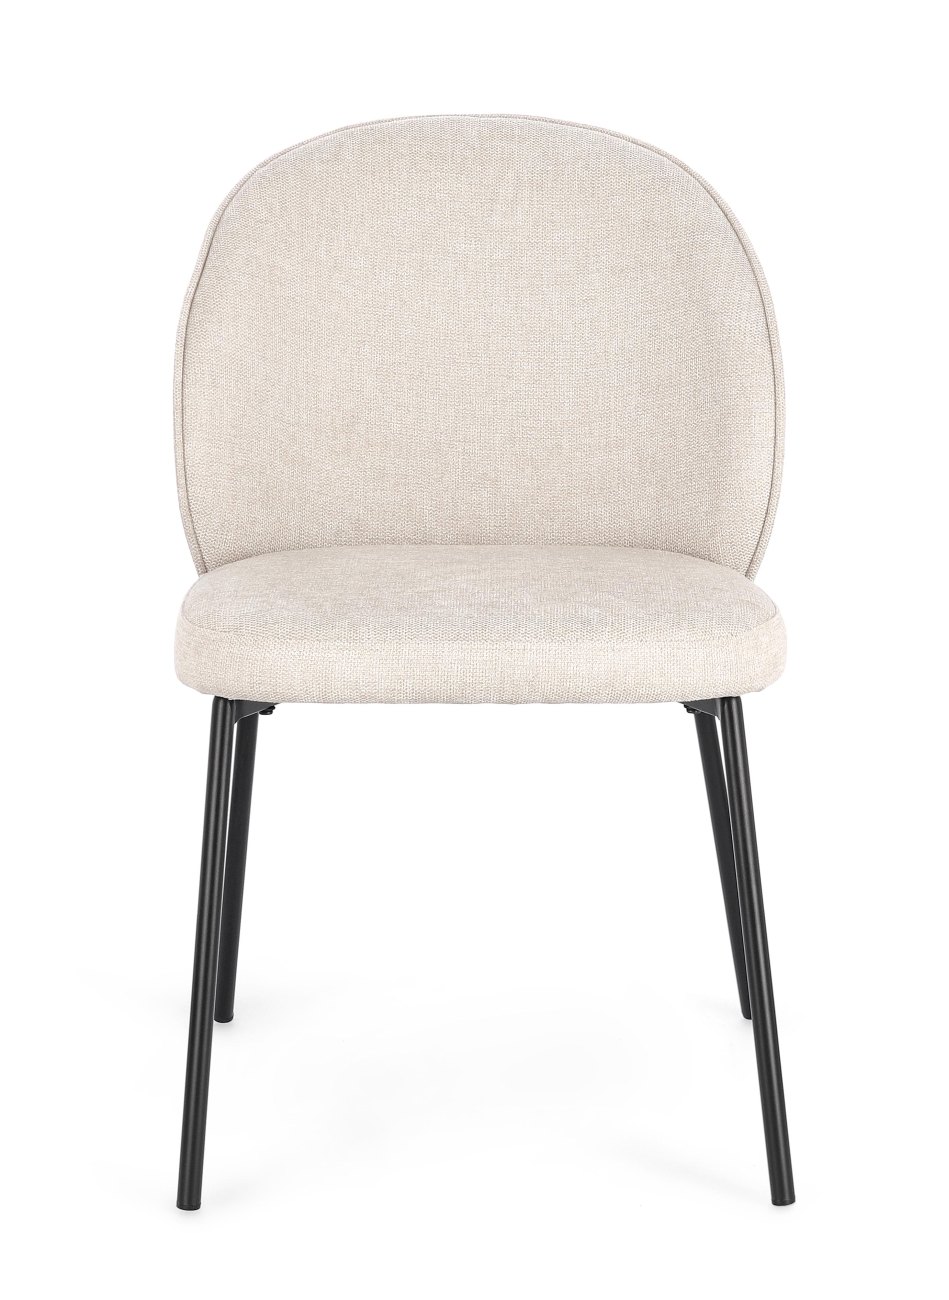 Der Esszimmerstuhl Wendy überzeugt mit seinem modernen Stil. Gefertigt wurde er aus Stoff, welcher einen Beigen Farbton besitzt. Das Gestell ist aus Metall und hat eine schwarze Farbe. Der Stuhl besitzt eine Sitzhöhe von 48 cm.